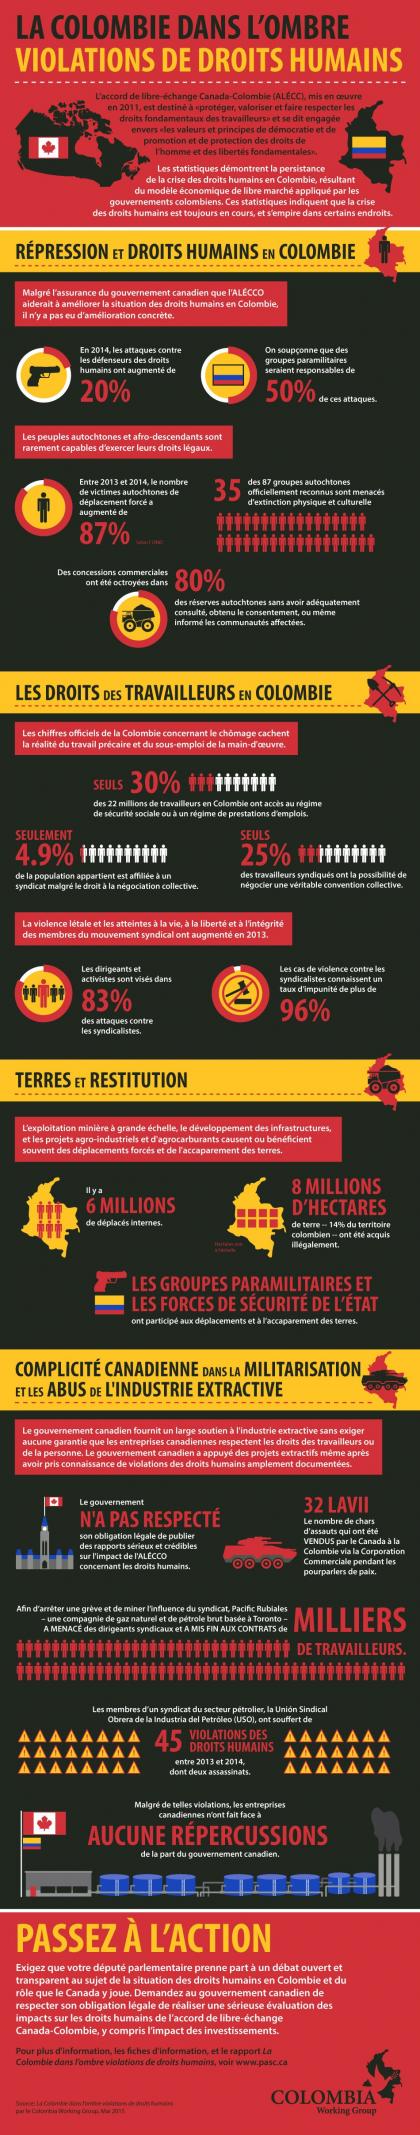 La Colombie dans l'ombre des violations de droits humains - Infographie